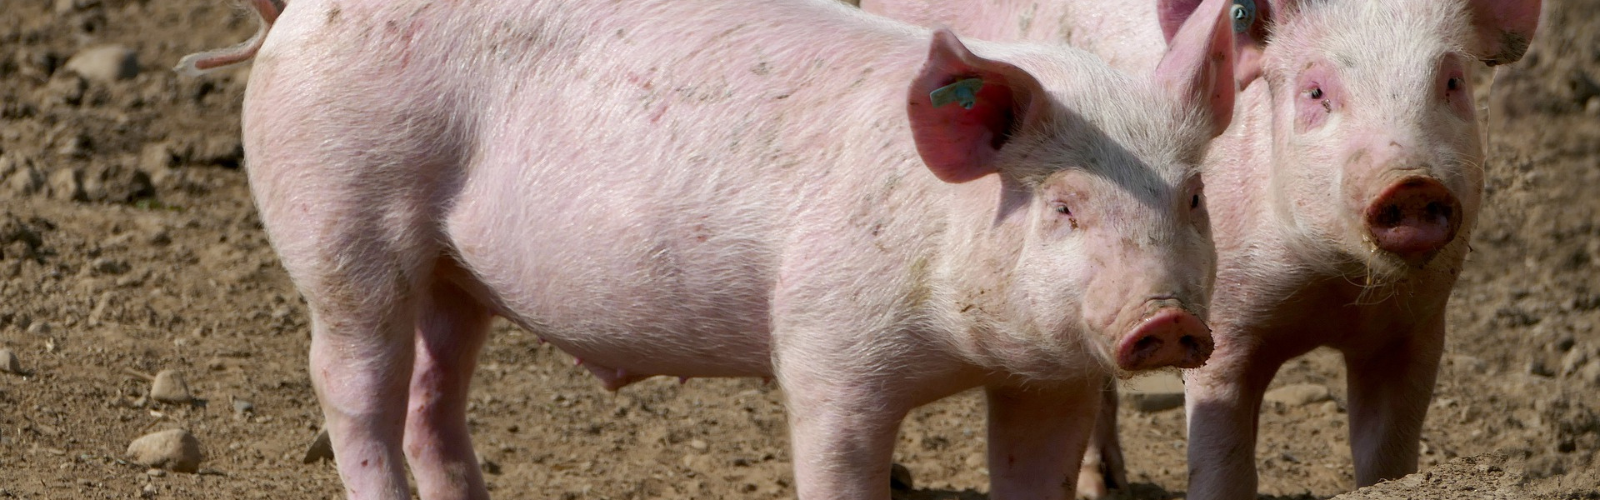 Investigadores de la UMU revisan todo el potencial de la modificación genética de cerdos